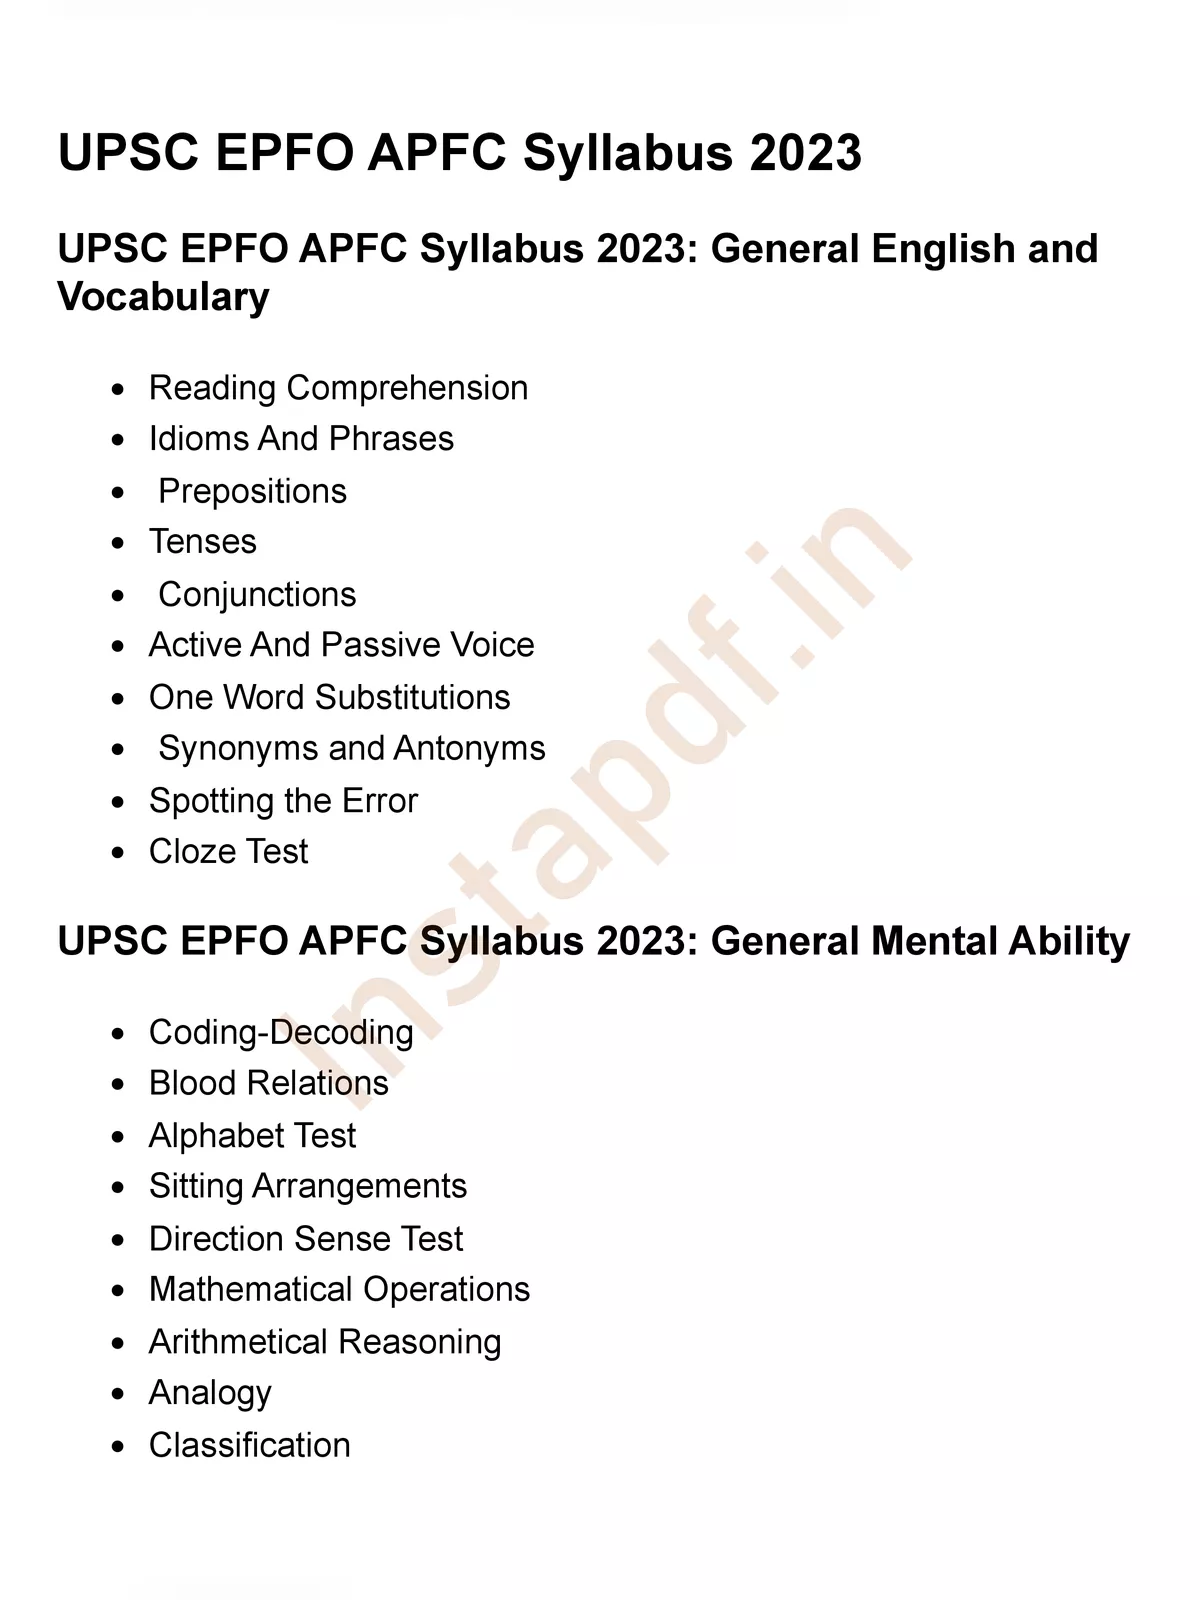 UPSC EPFO Syllabus